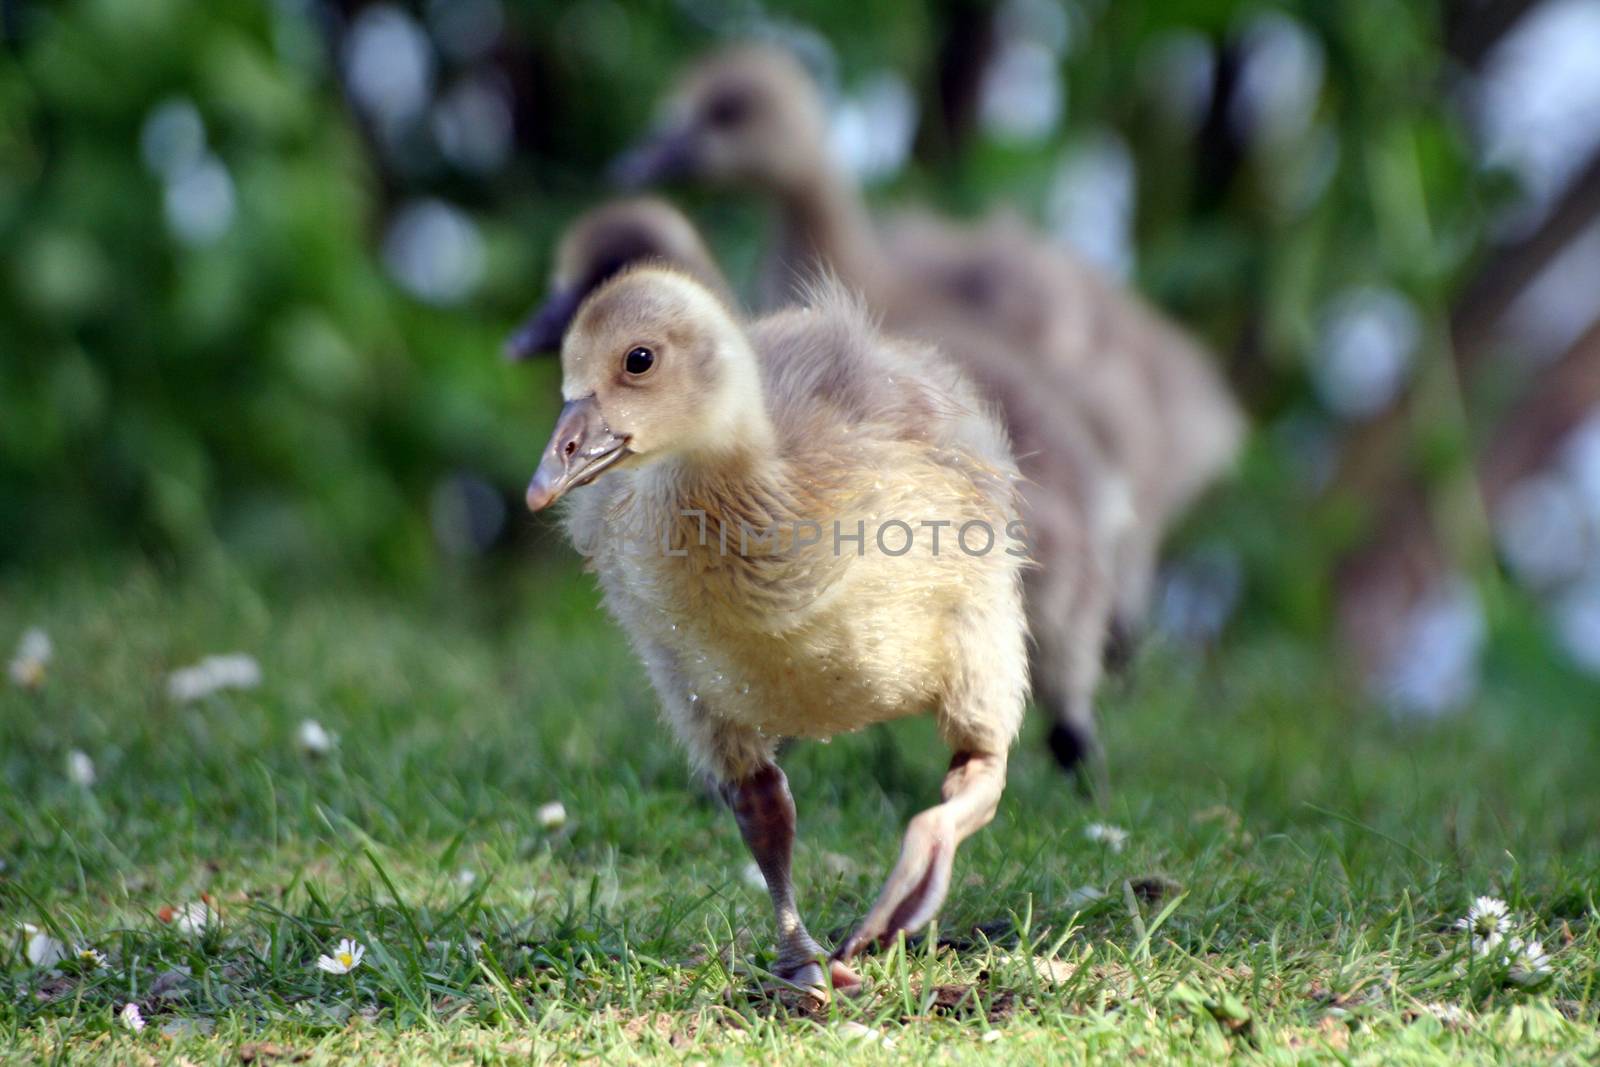 cute Little gosling walking on the lawn